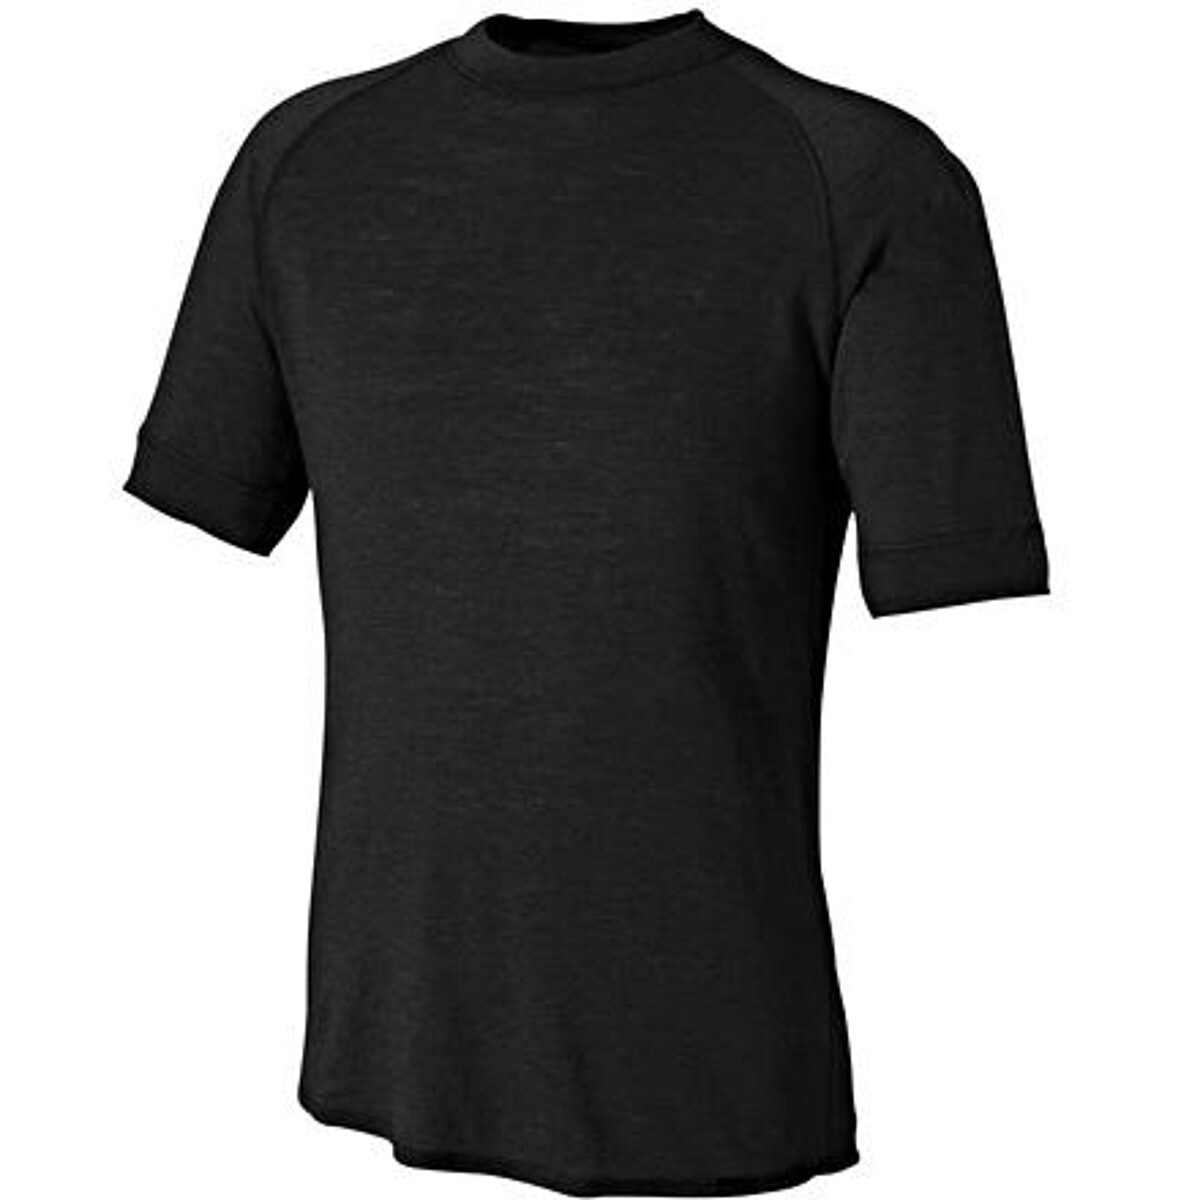 Patagonia Wool 2 T-Shirt Short-Sleeve - Men's - Clothing